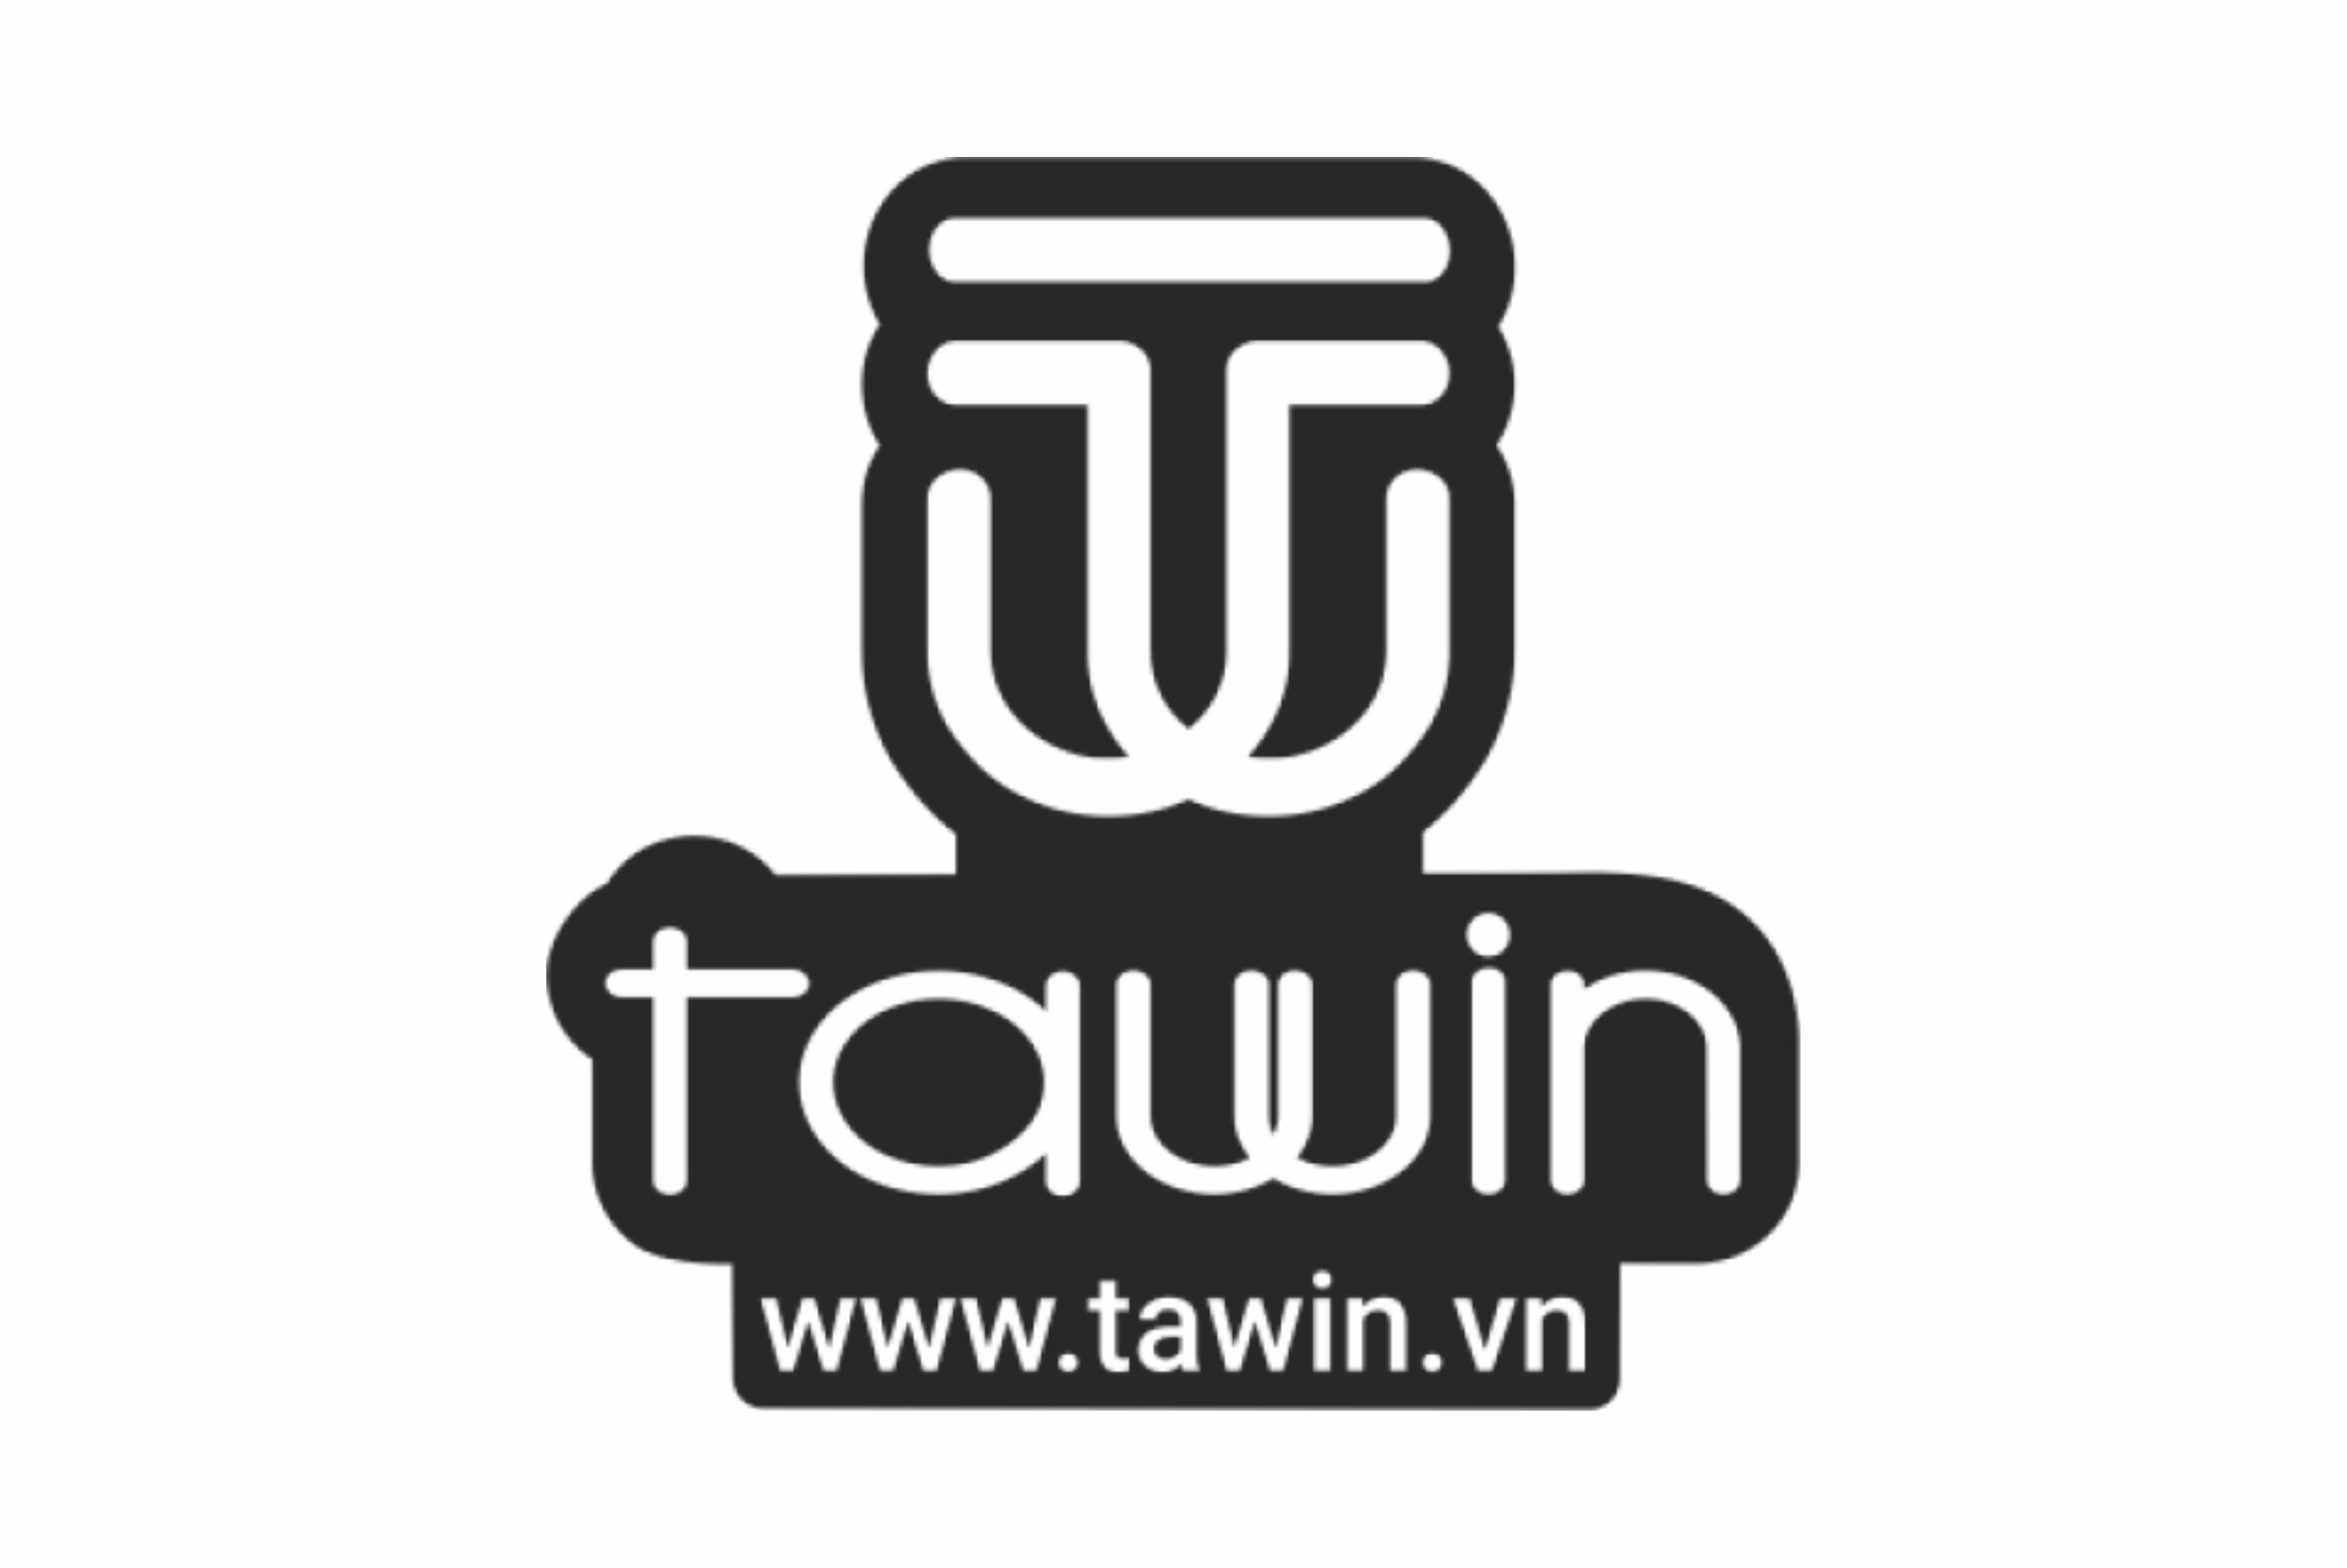 tawin-logo